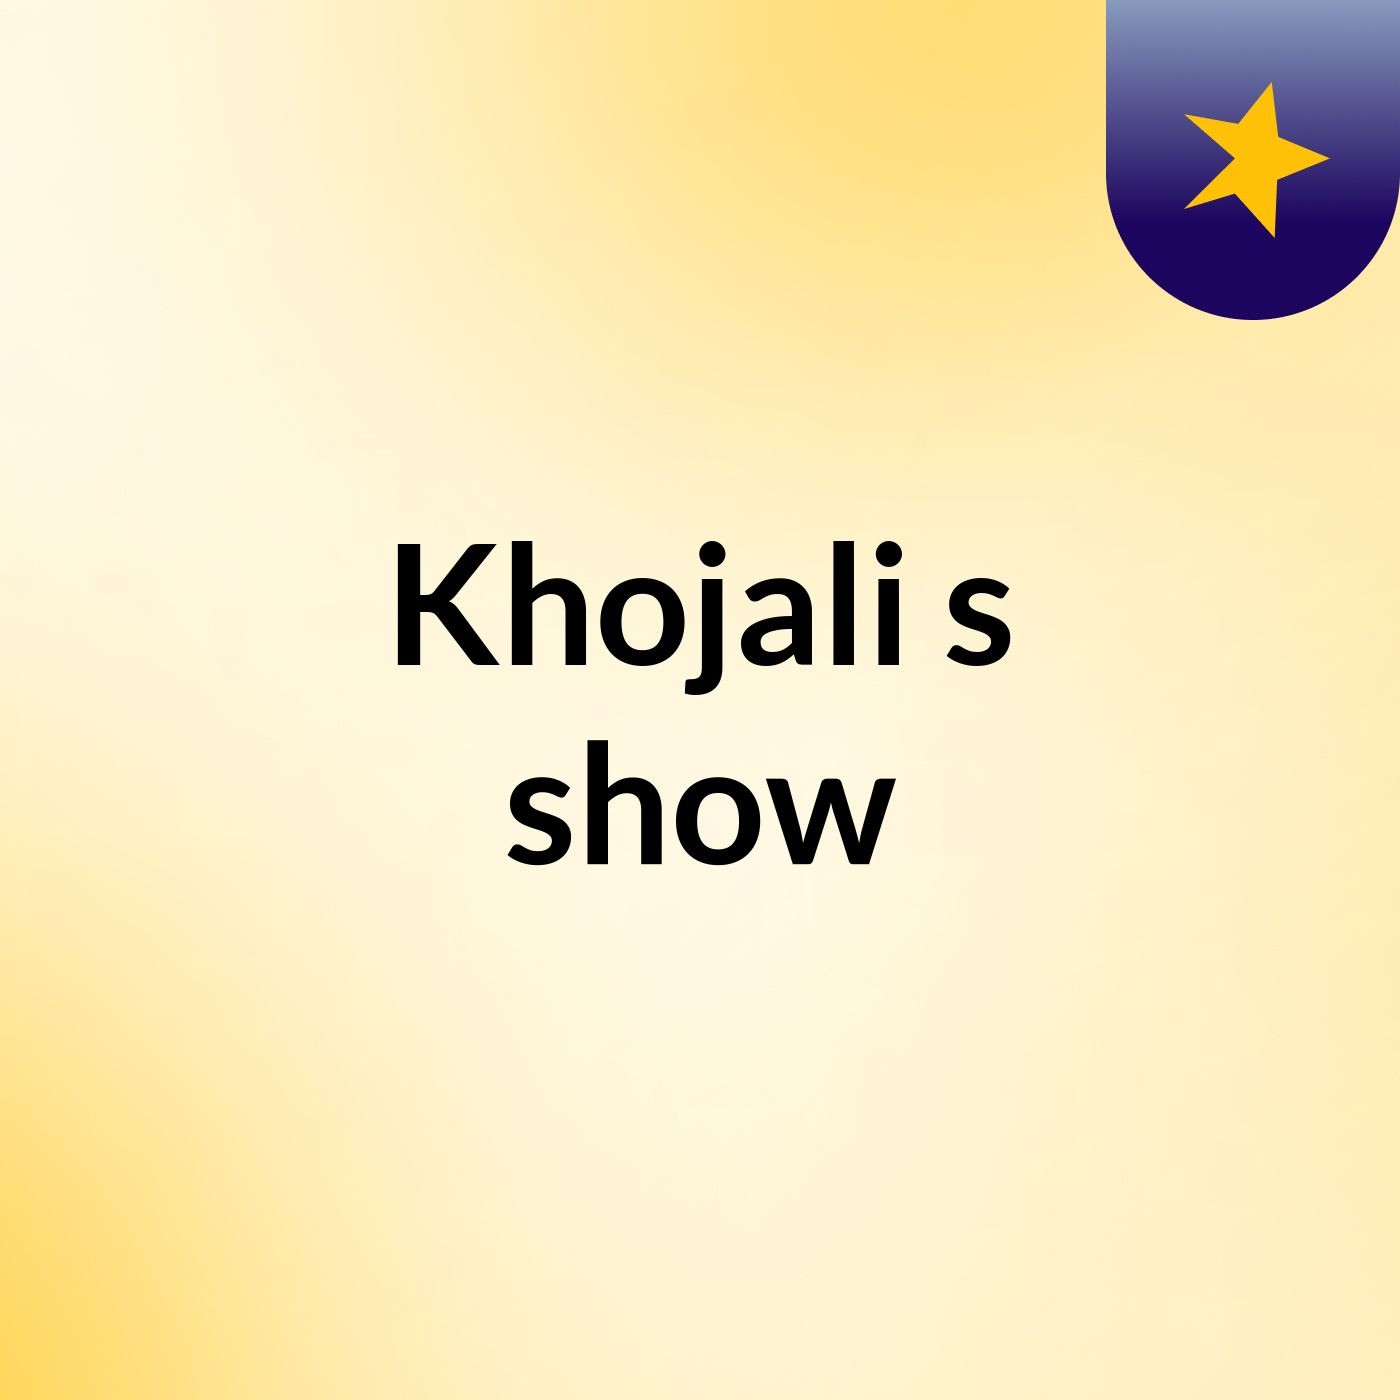 Khojali's show